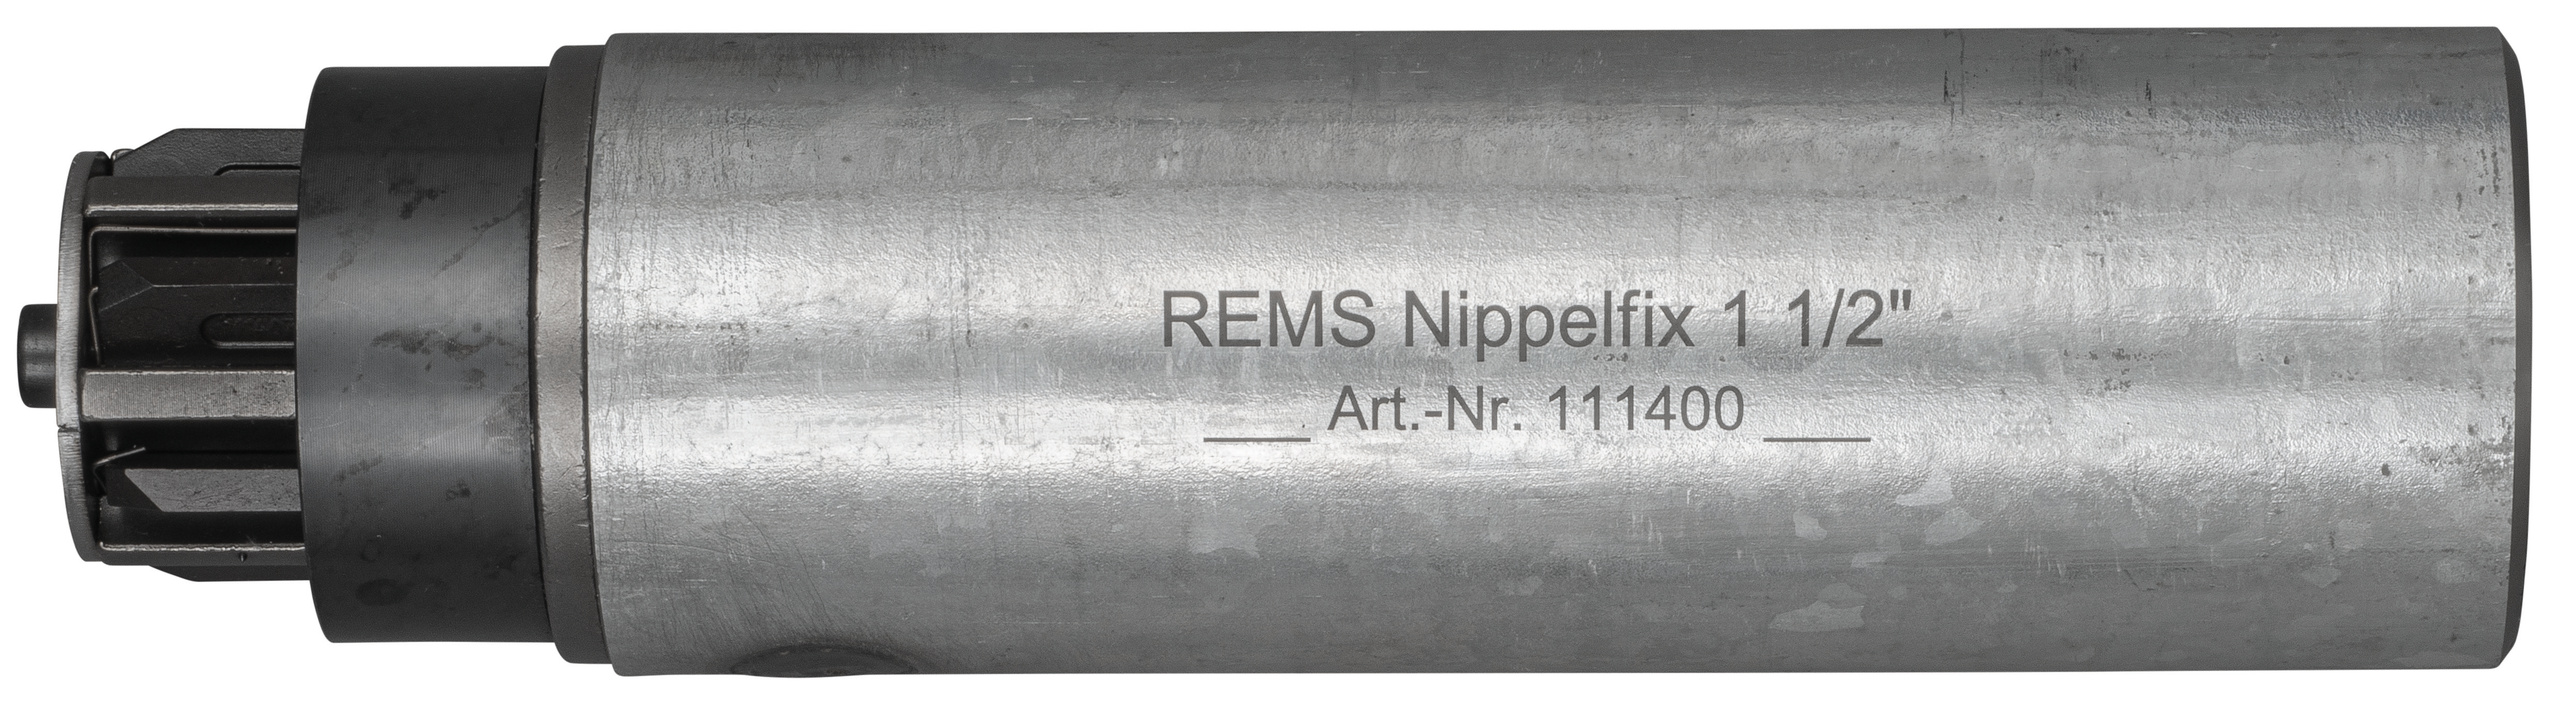 <br/>REMS Nippelfix 1 1/2